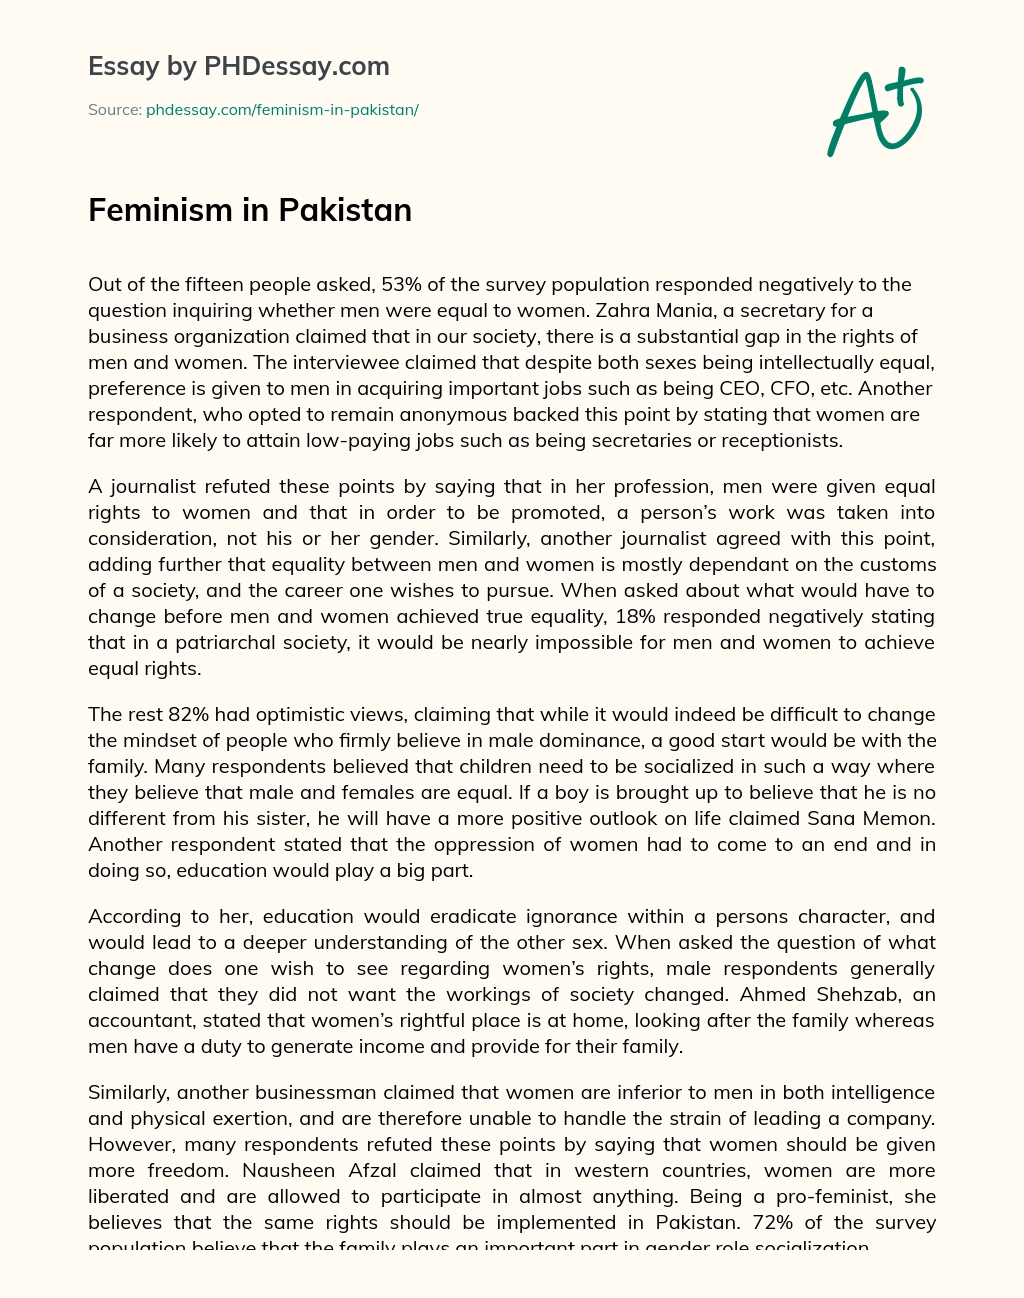 Feminism in Pakistan essay